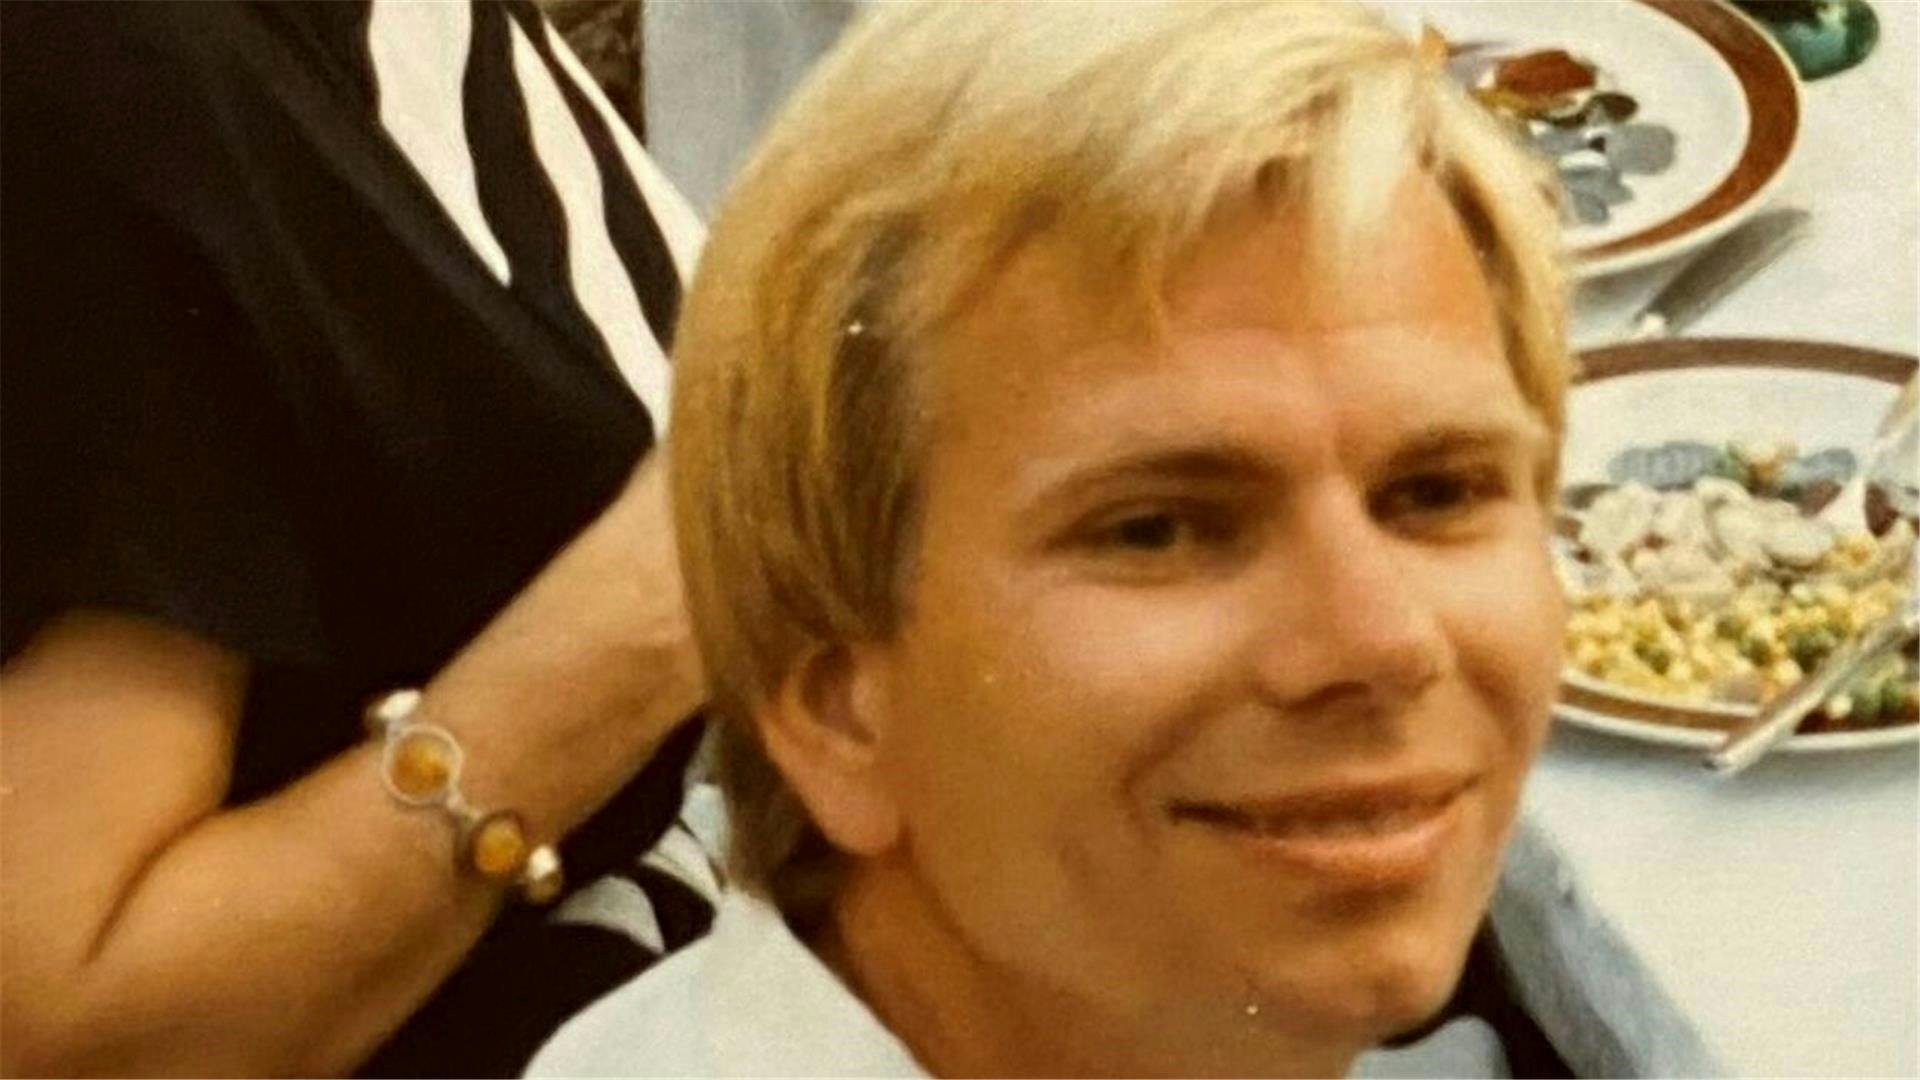 Den blonde seriemorder Kurt Werner Wichmann har mindst fem liv på samvittigheden. – Jeg har aldrig set så iskolde øjne som hans, fortalte fhv. kriminalchef Wolfgang Sielaff